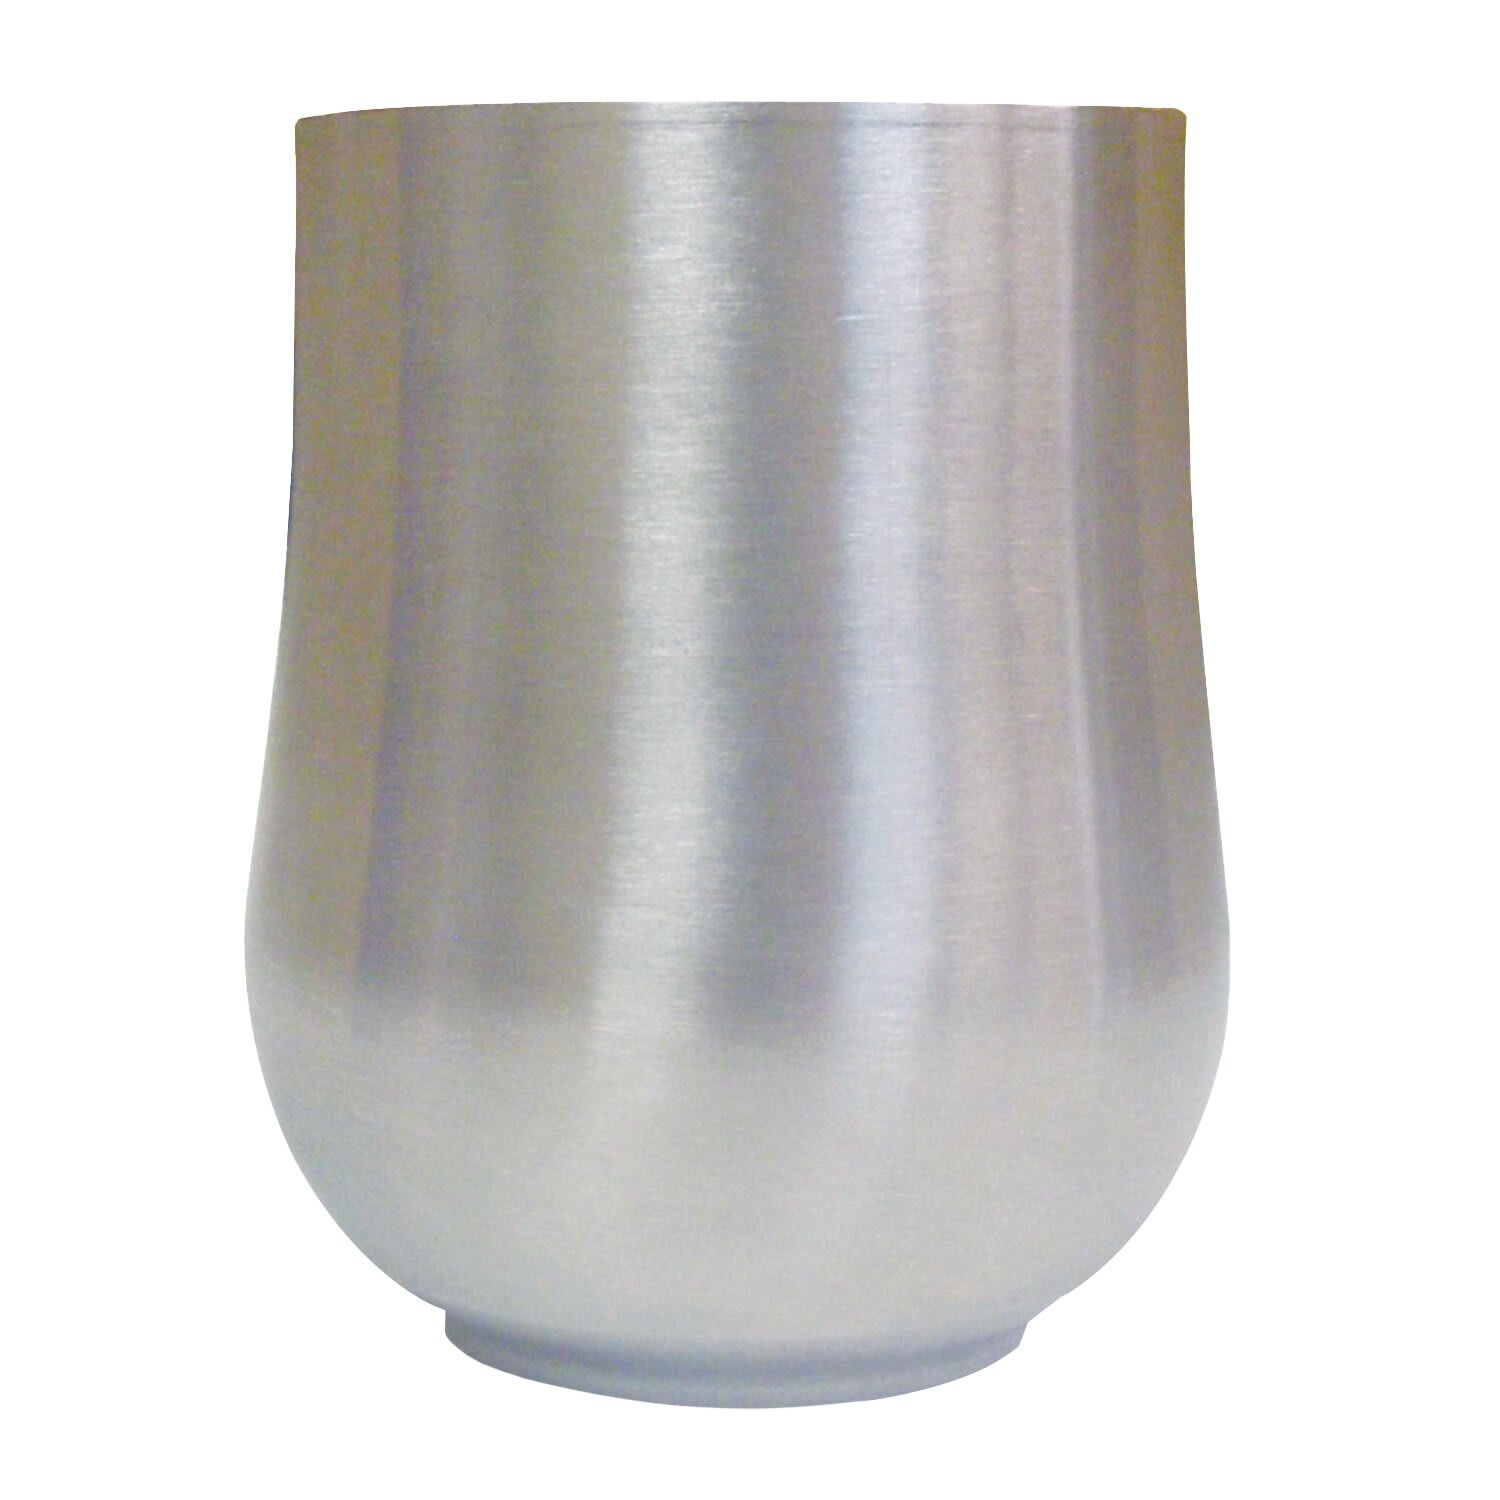 LQ S/ Steel Whiskey Glass 330ml, 1004659